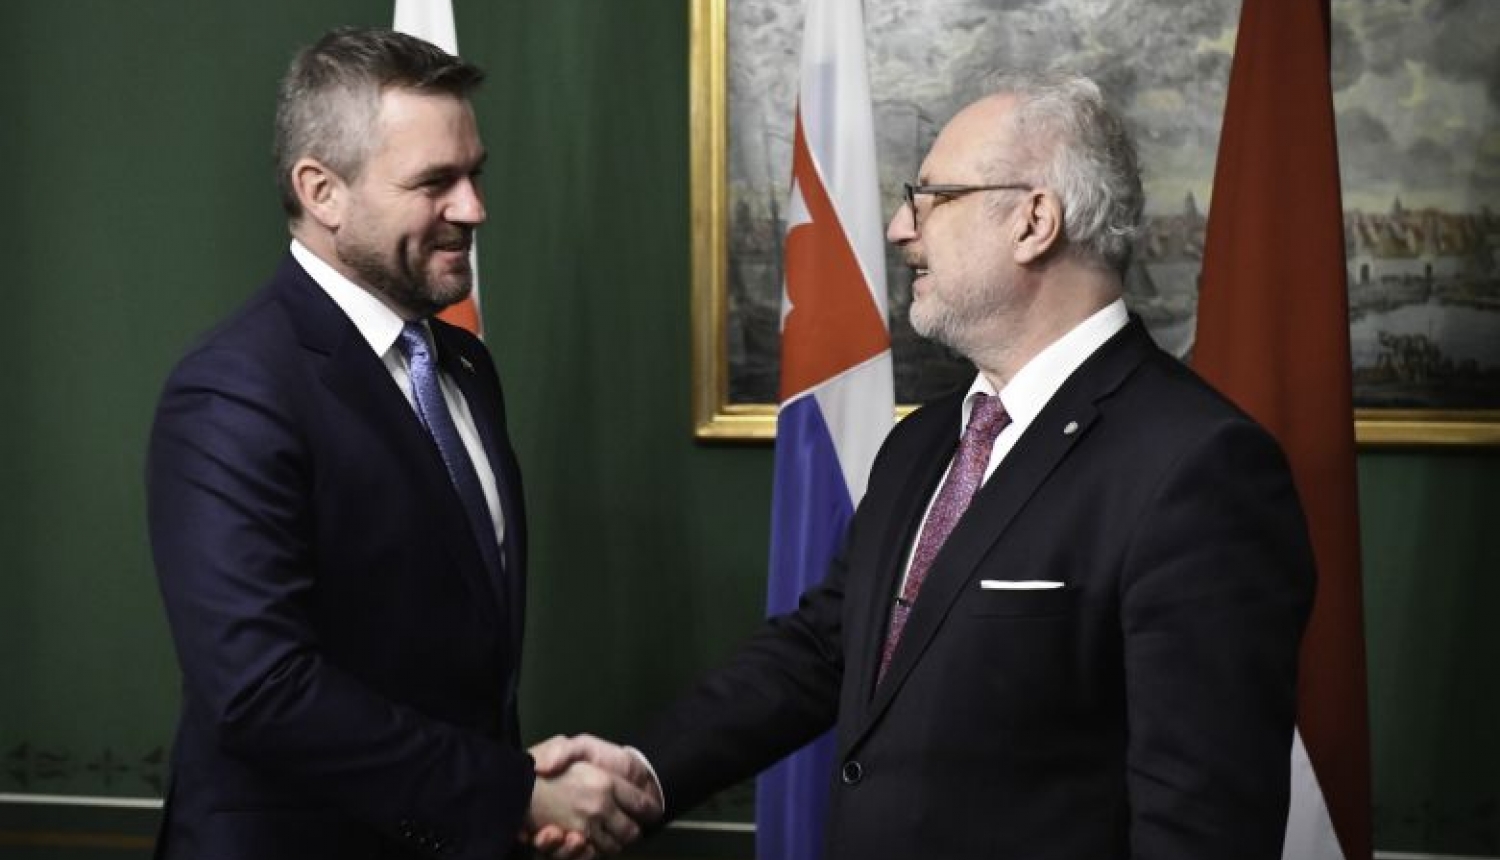 Valsts prezidents: Latvija un Slovākija ir valstis ar līdzīgām ambīcijām un izaicinājumiem